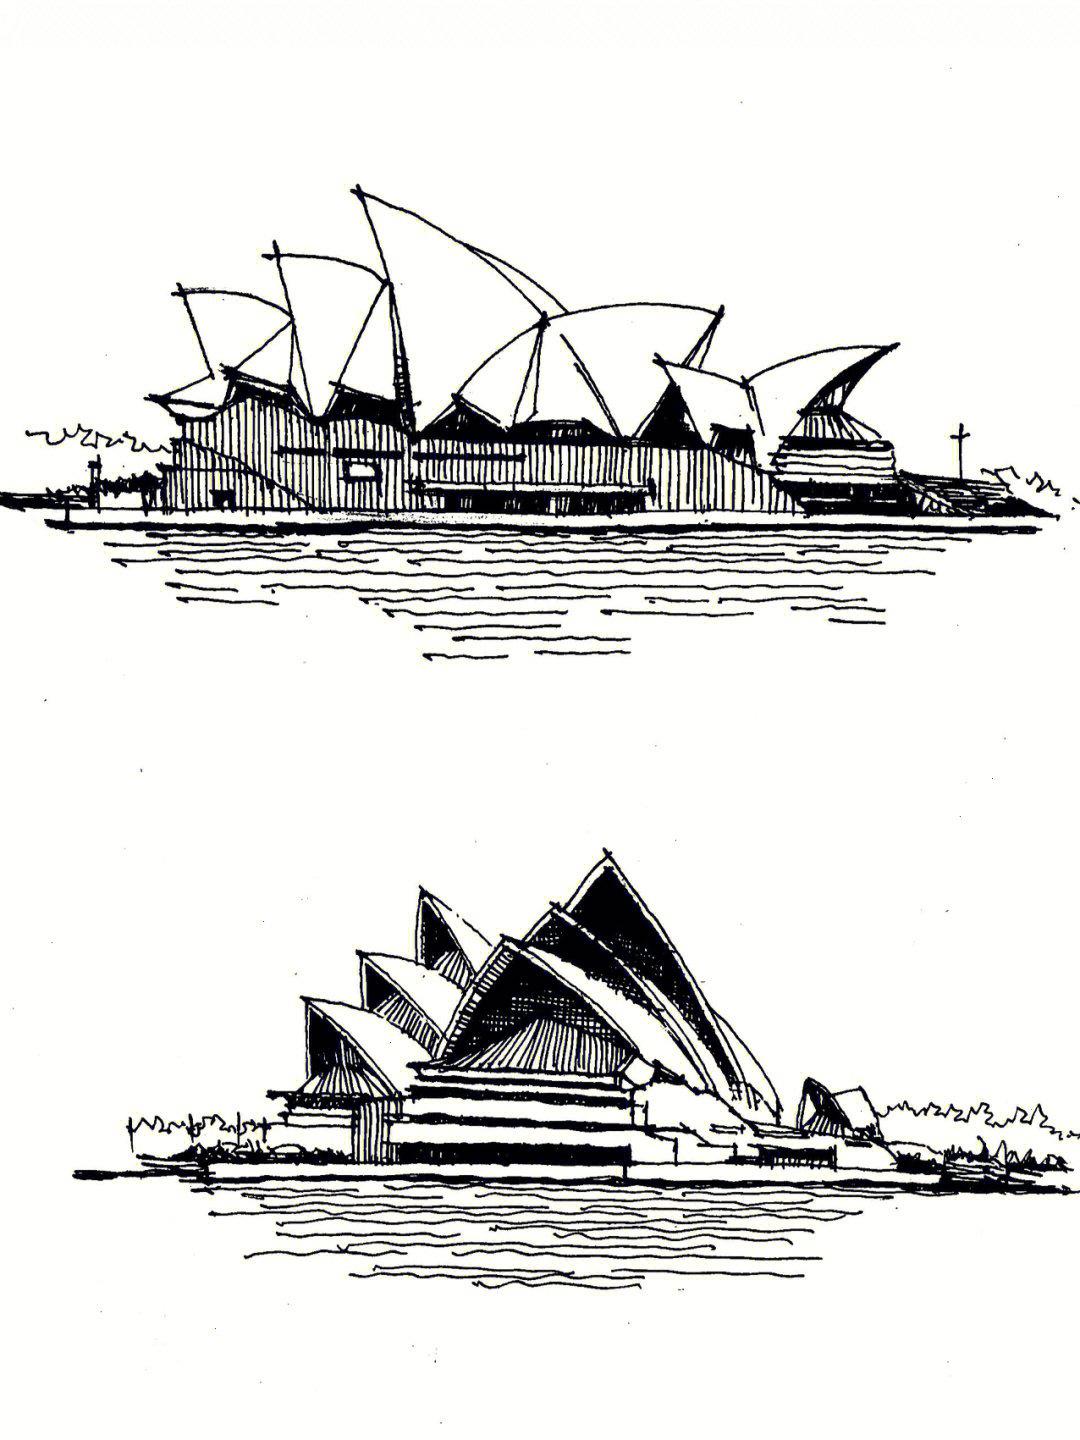 悉尼歌剧院简笔画立体图片